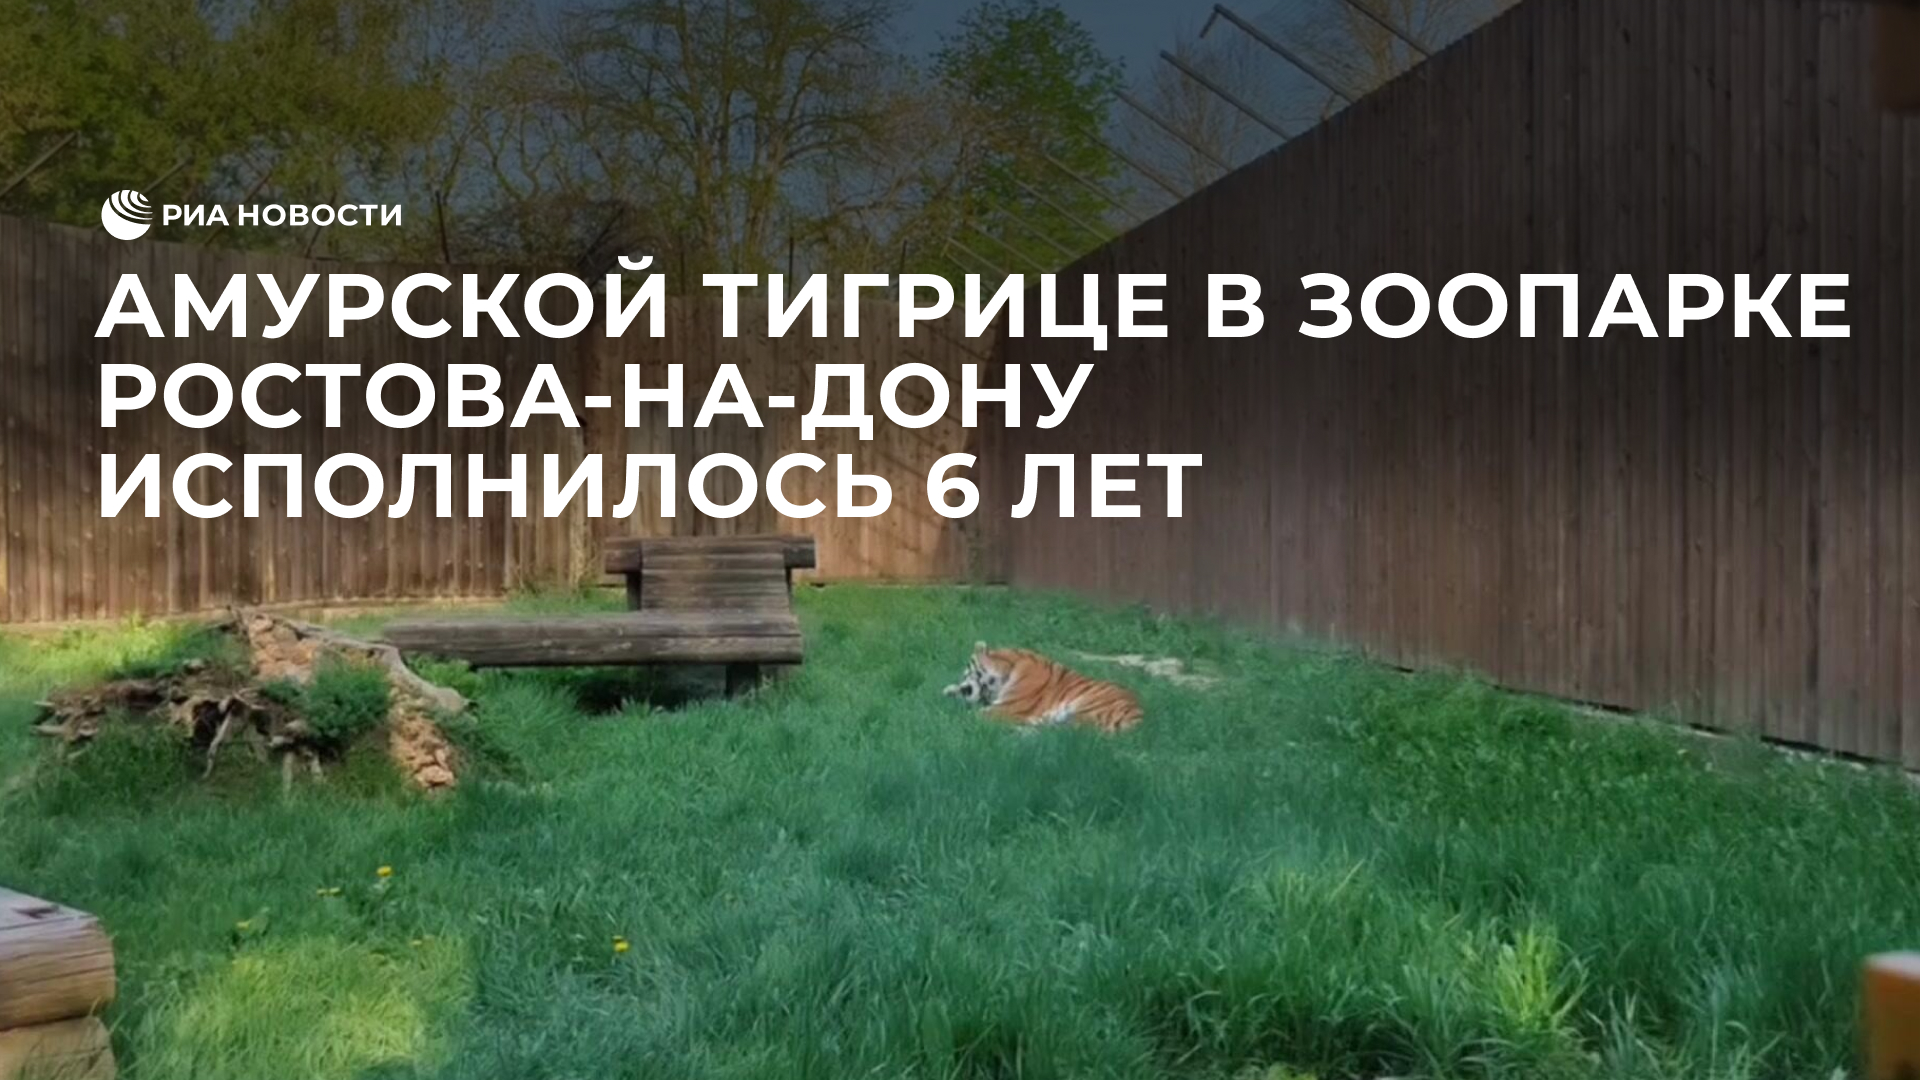 Амурской тигрице в зоопарке Ростова-на-Дону исполнилось 6 лет